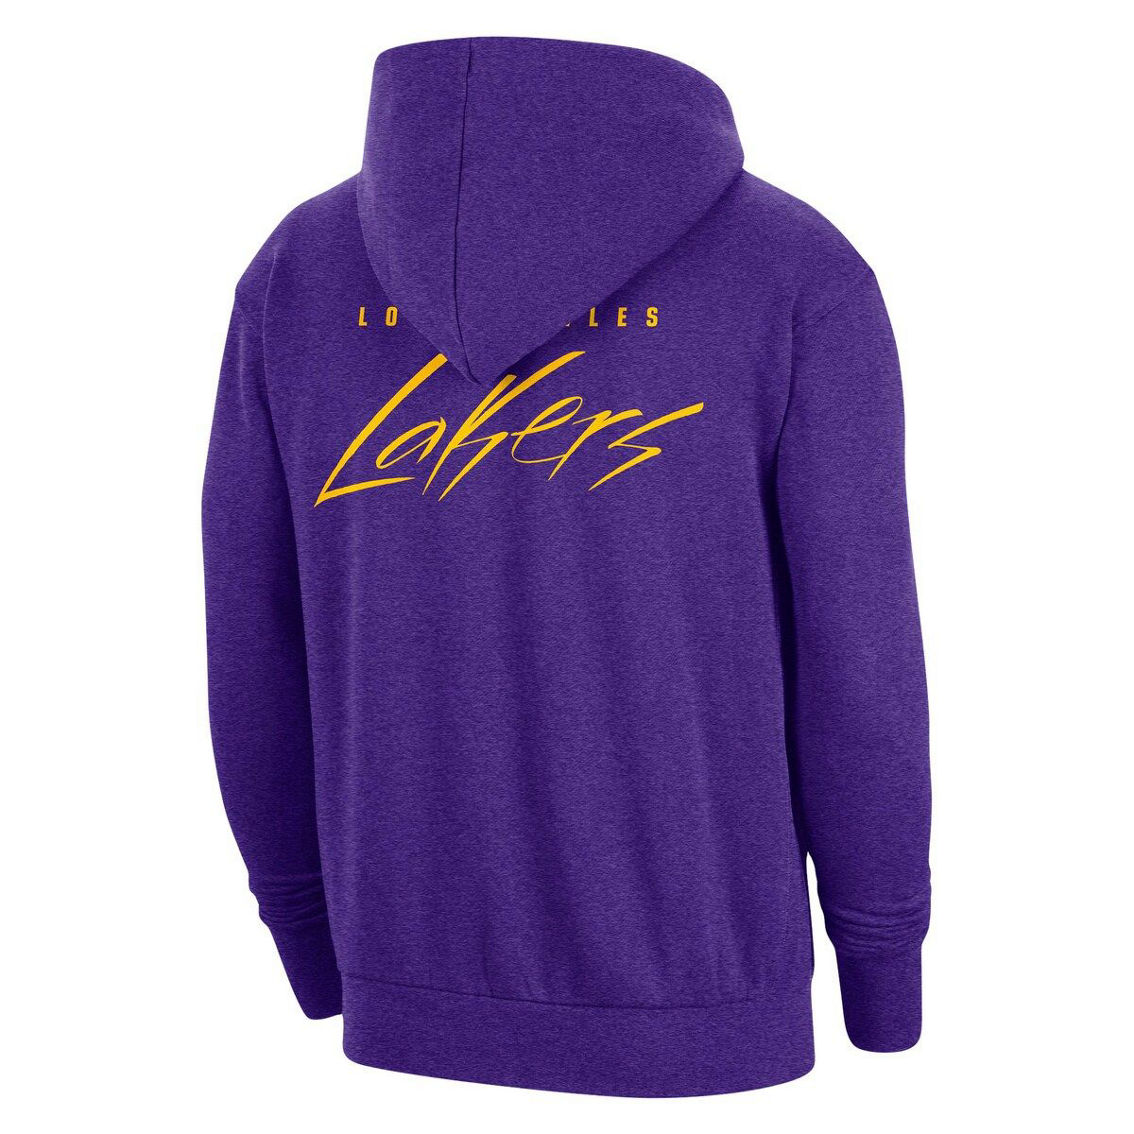 Nike Men's Heather Purple Los Angeles Lakers Courtside Versus Flight Pullover Hoodie - Image 4 of 4